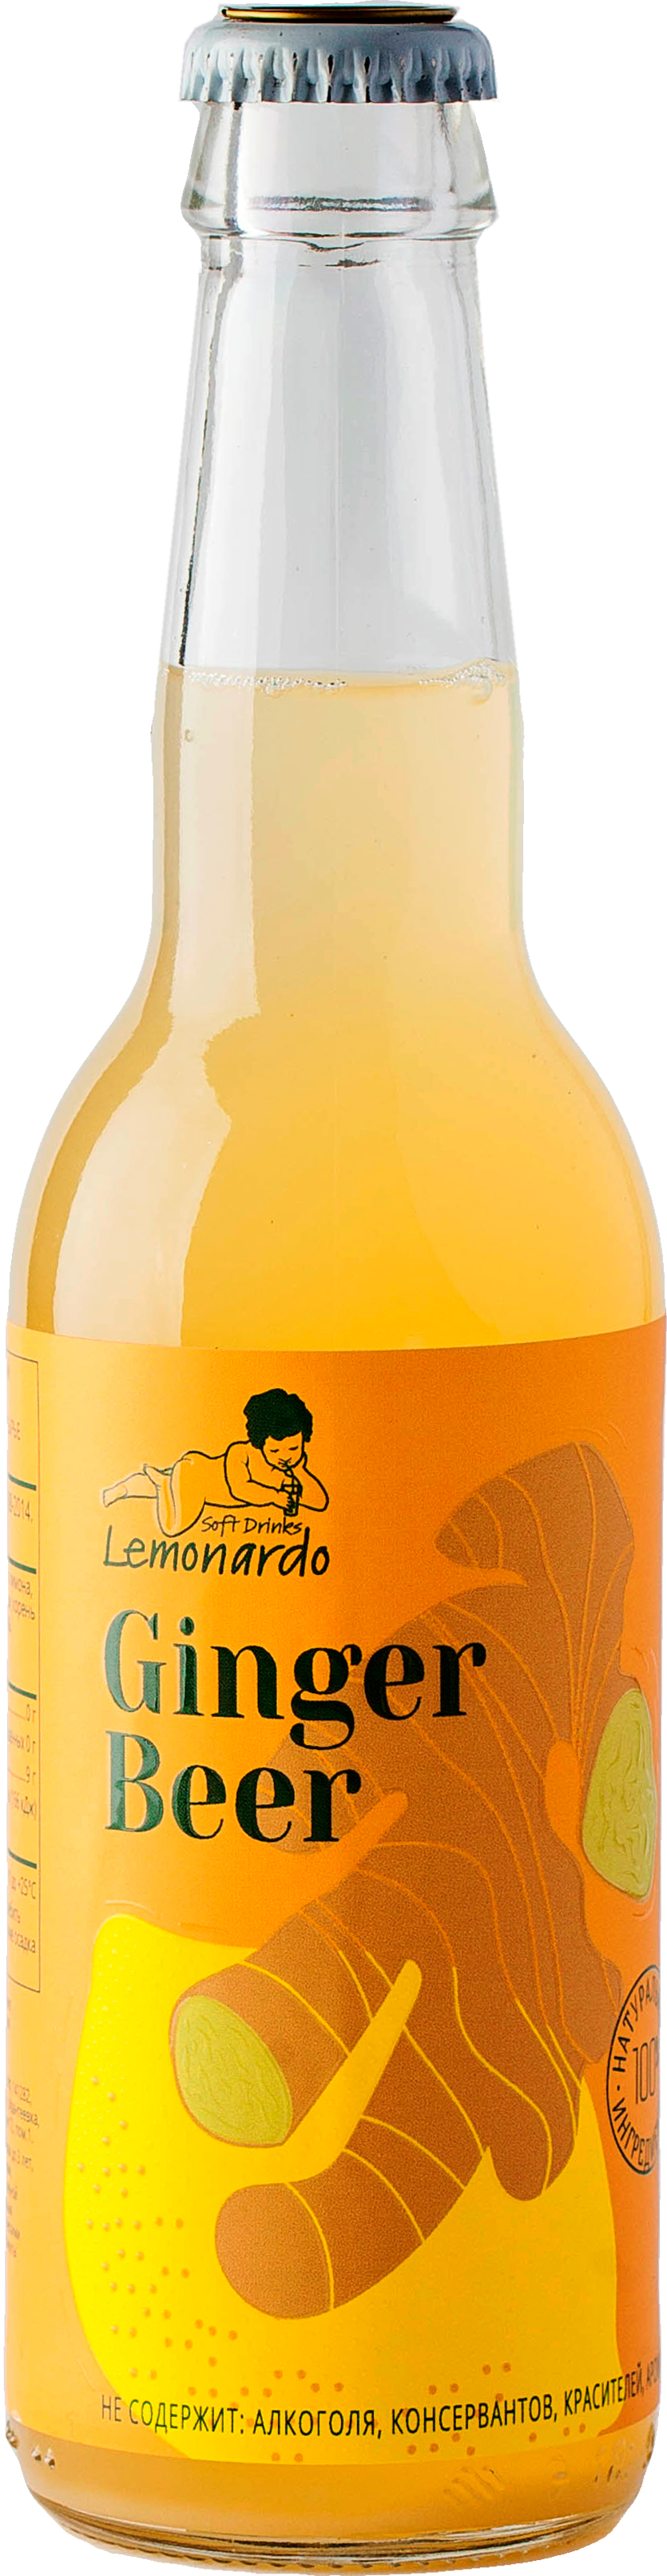 имбирное пиво, lemonardo